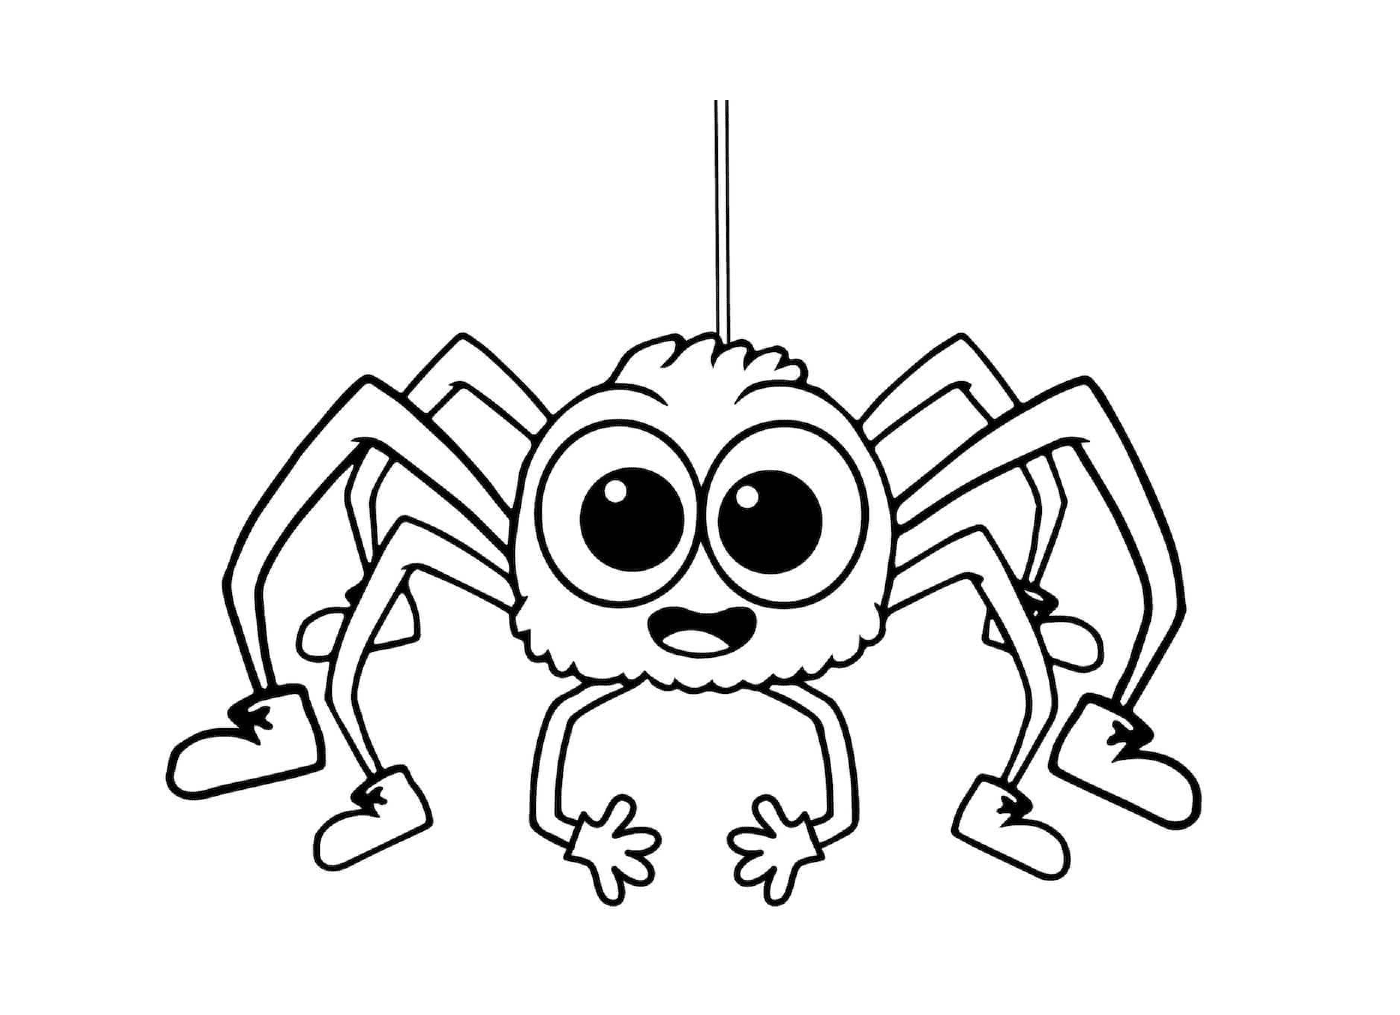  Eine einfache und einfache Spinne für Kinder 